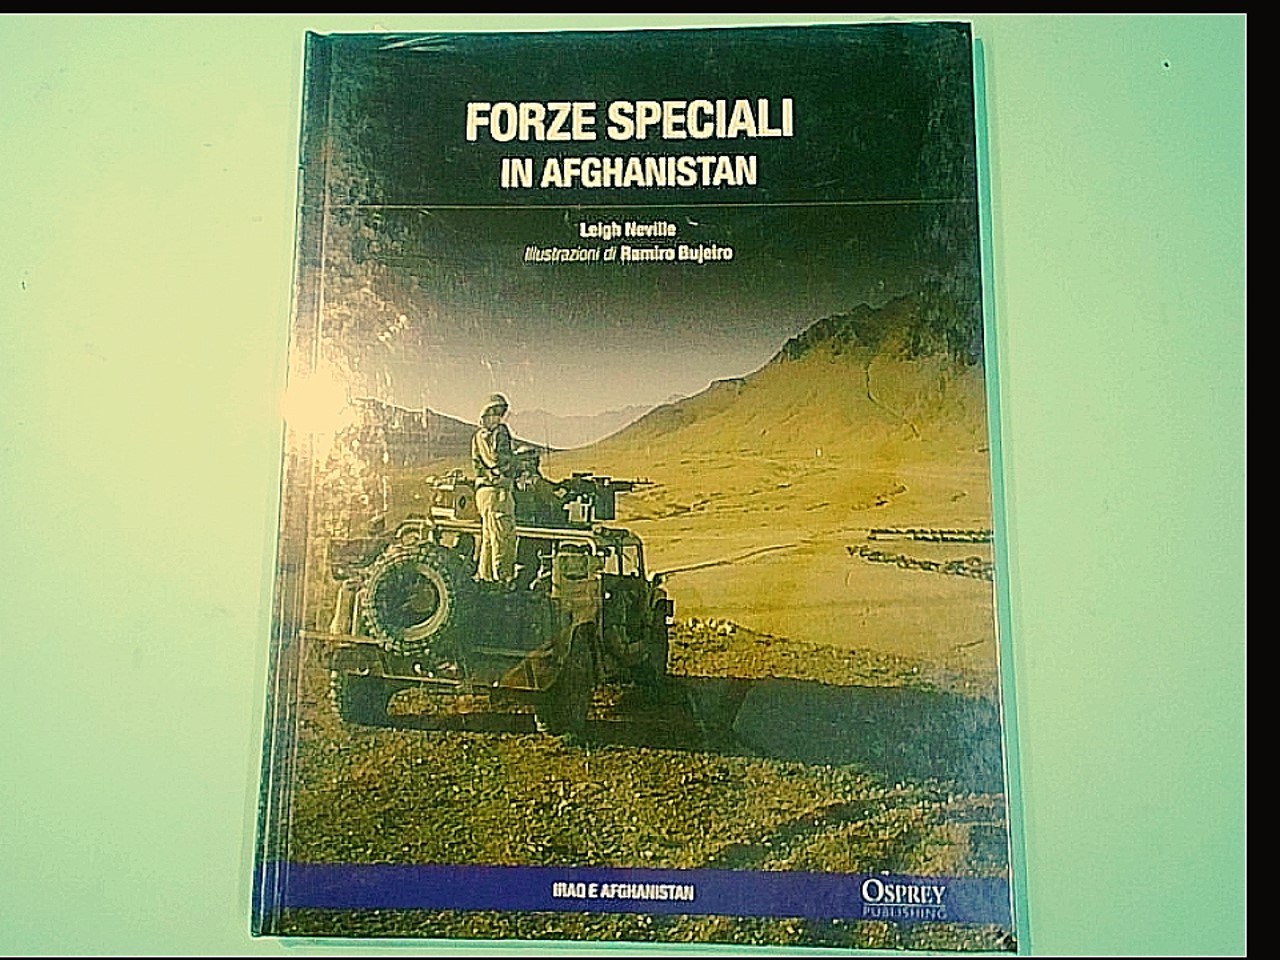 FORZE SPECIALI IN AFGHANISTAN NEVILLE OSPREY PUBLISHING